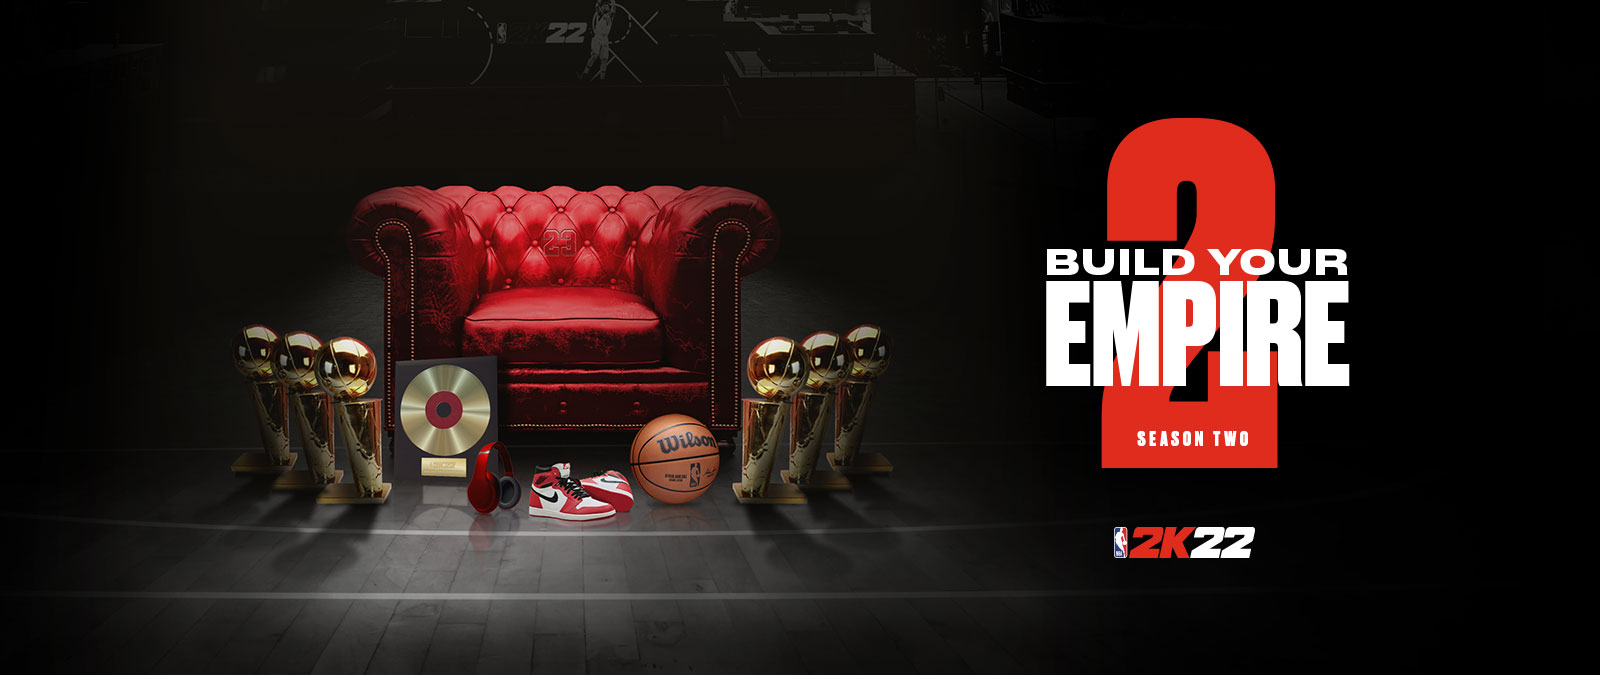 在 NBA 2k22 賽季 2 中建立帝國：放在在紅色皮椅周圍的數個獎盃。